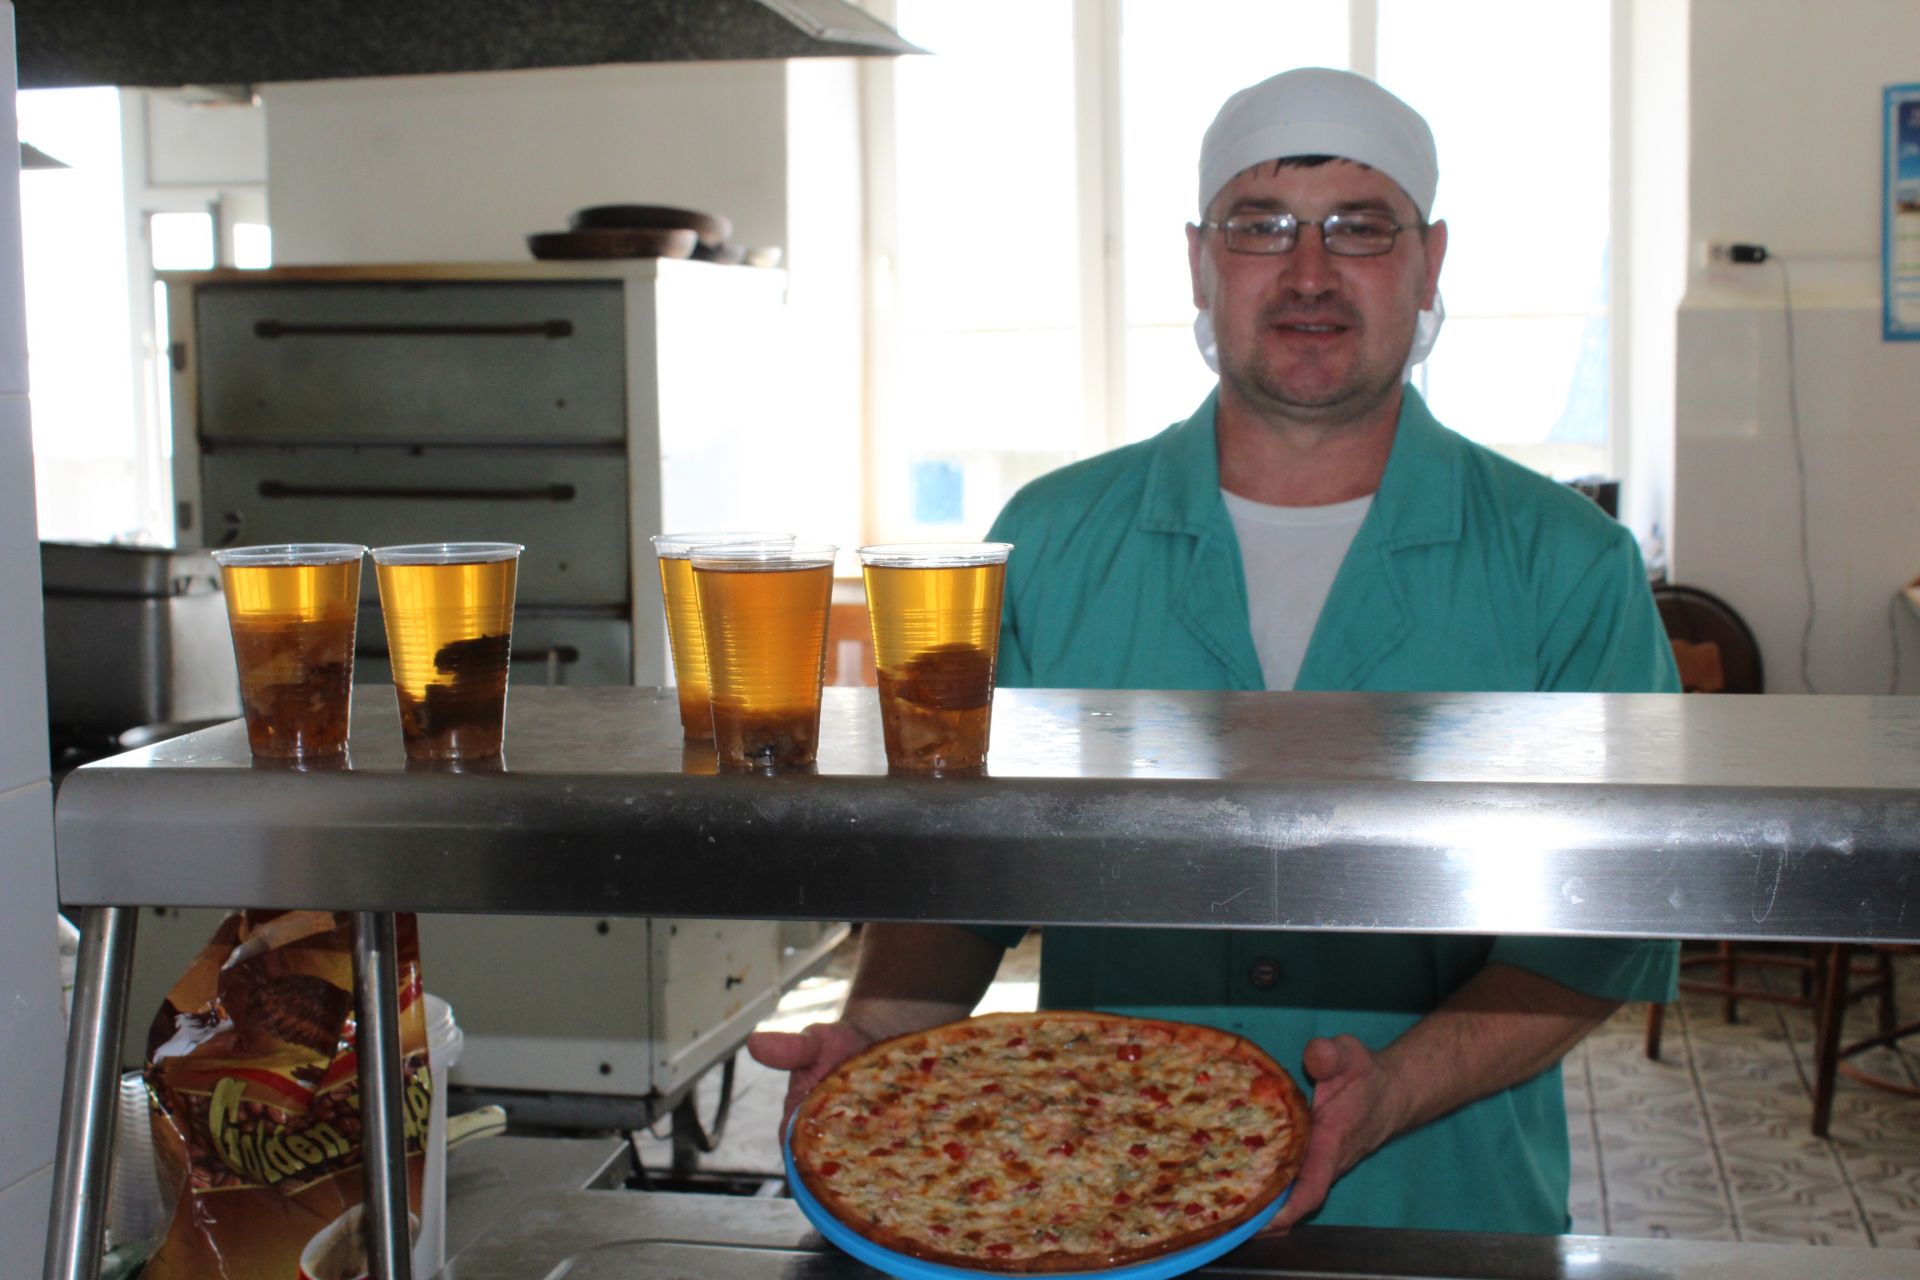 Фото: "В кулинарии главное фантазия" - говорит повар  столовой Кукморского элеватора Ильяс Мухутдинов